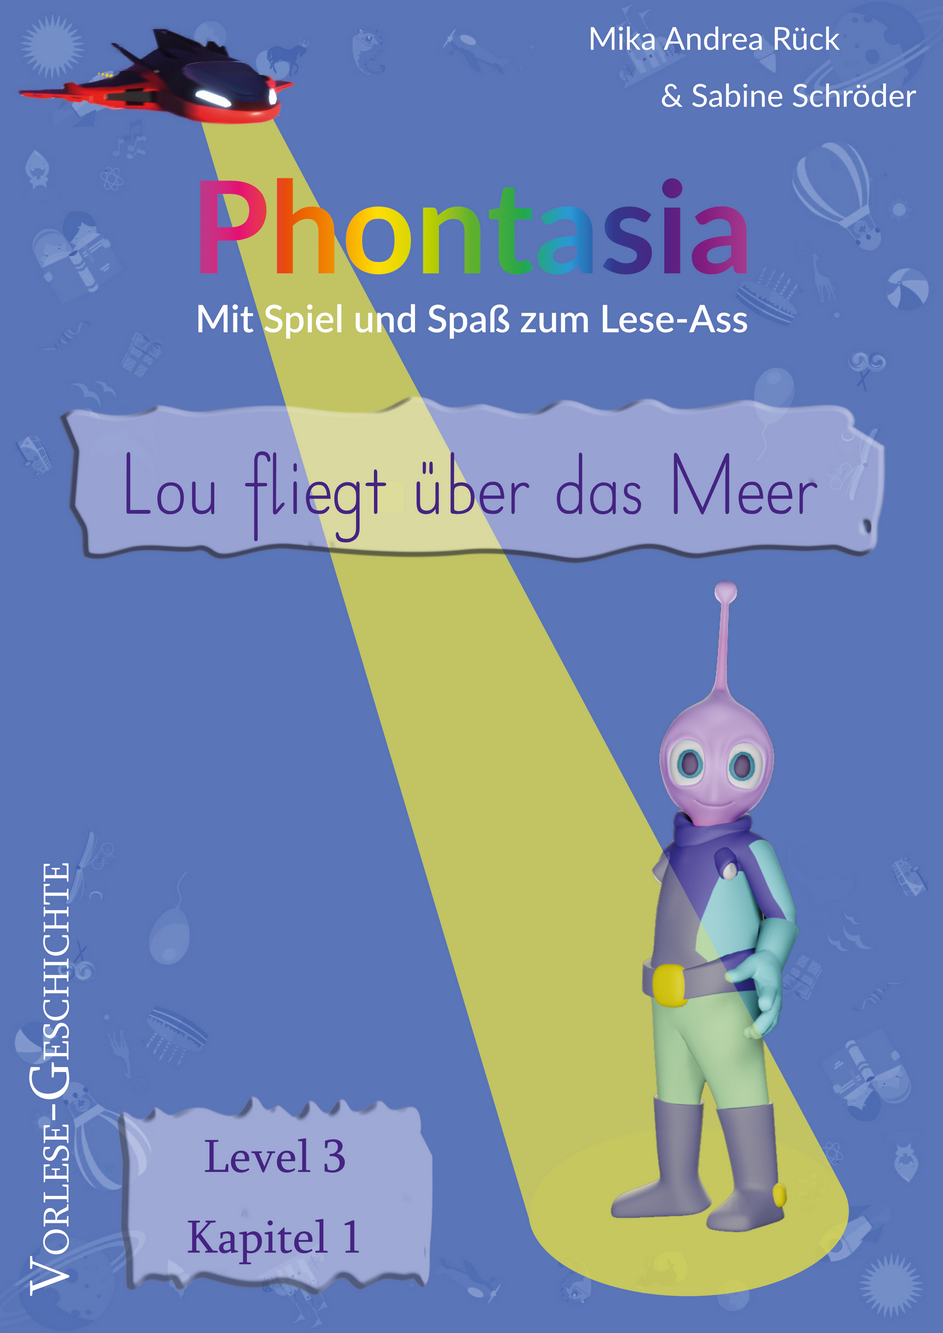 Phontasia: Vorlese-Geschichte „Lou fliegt über das Meer“